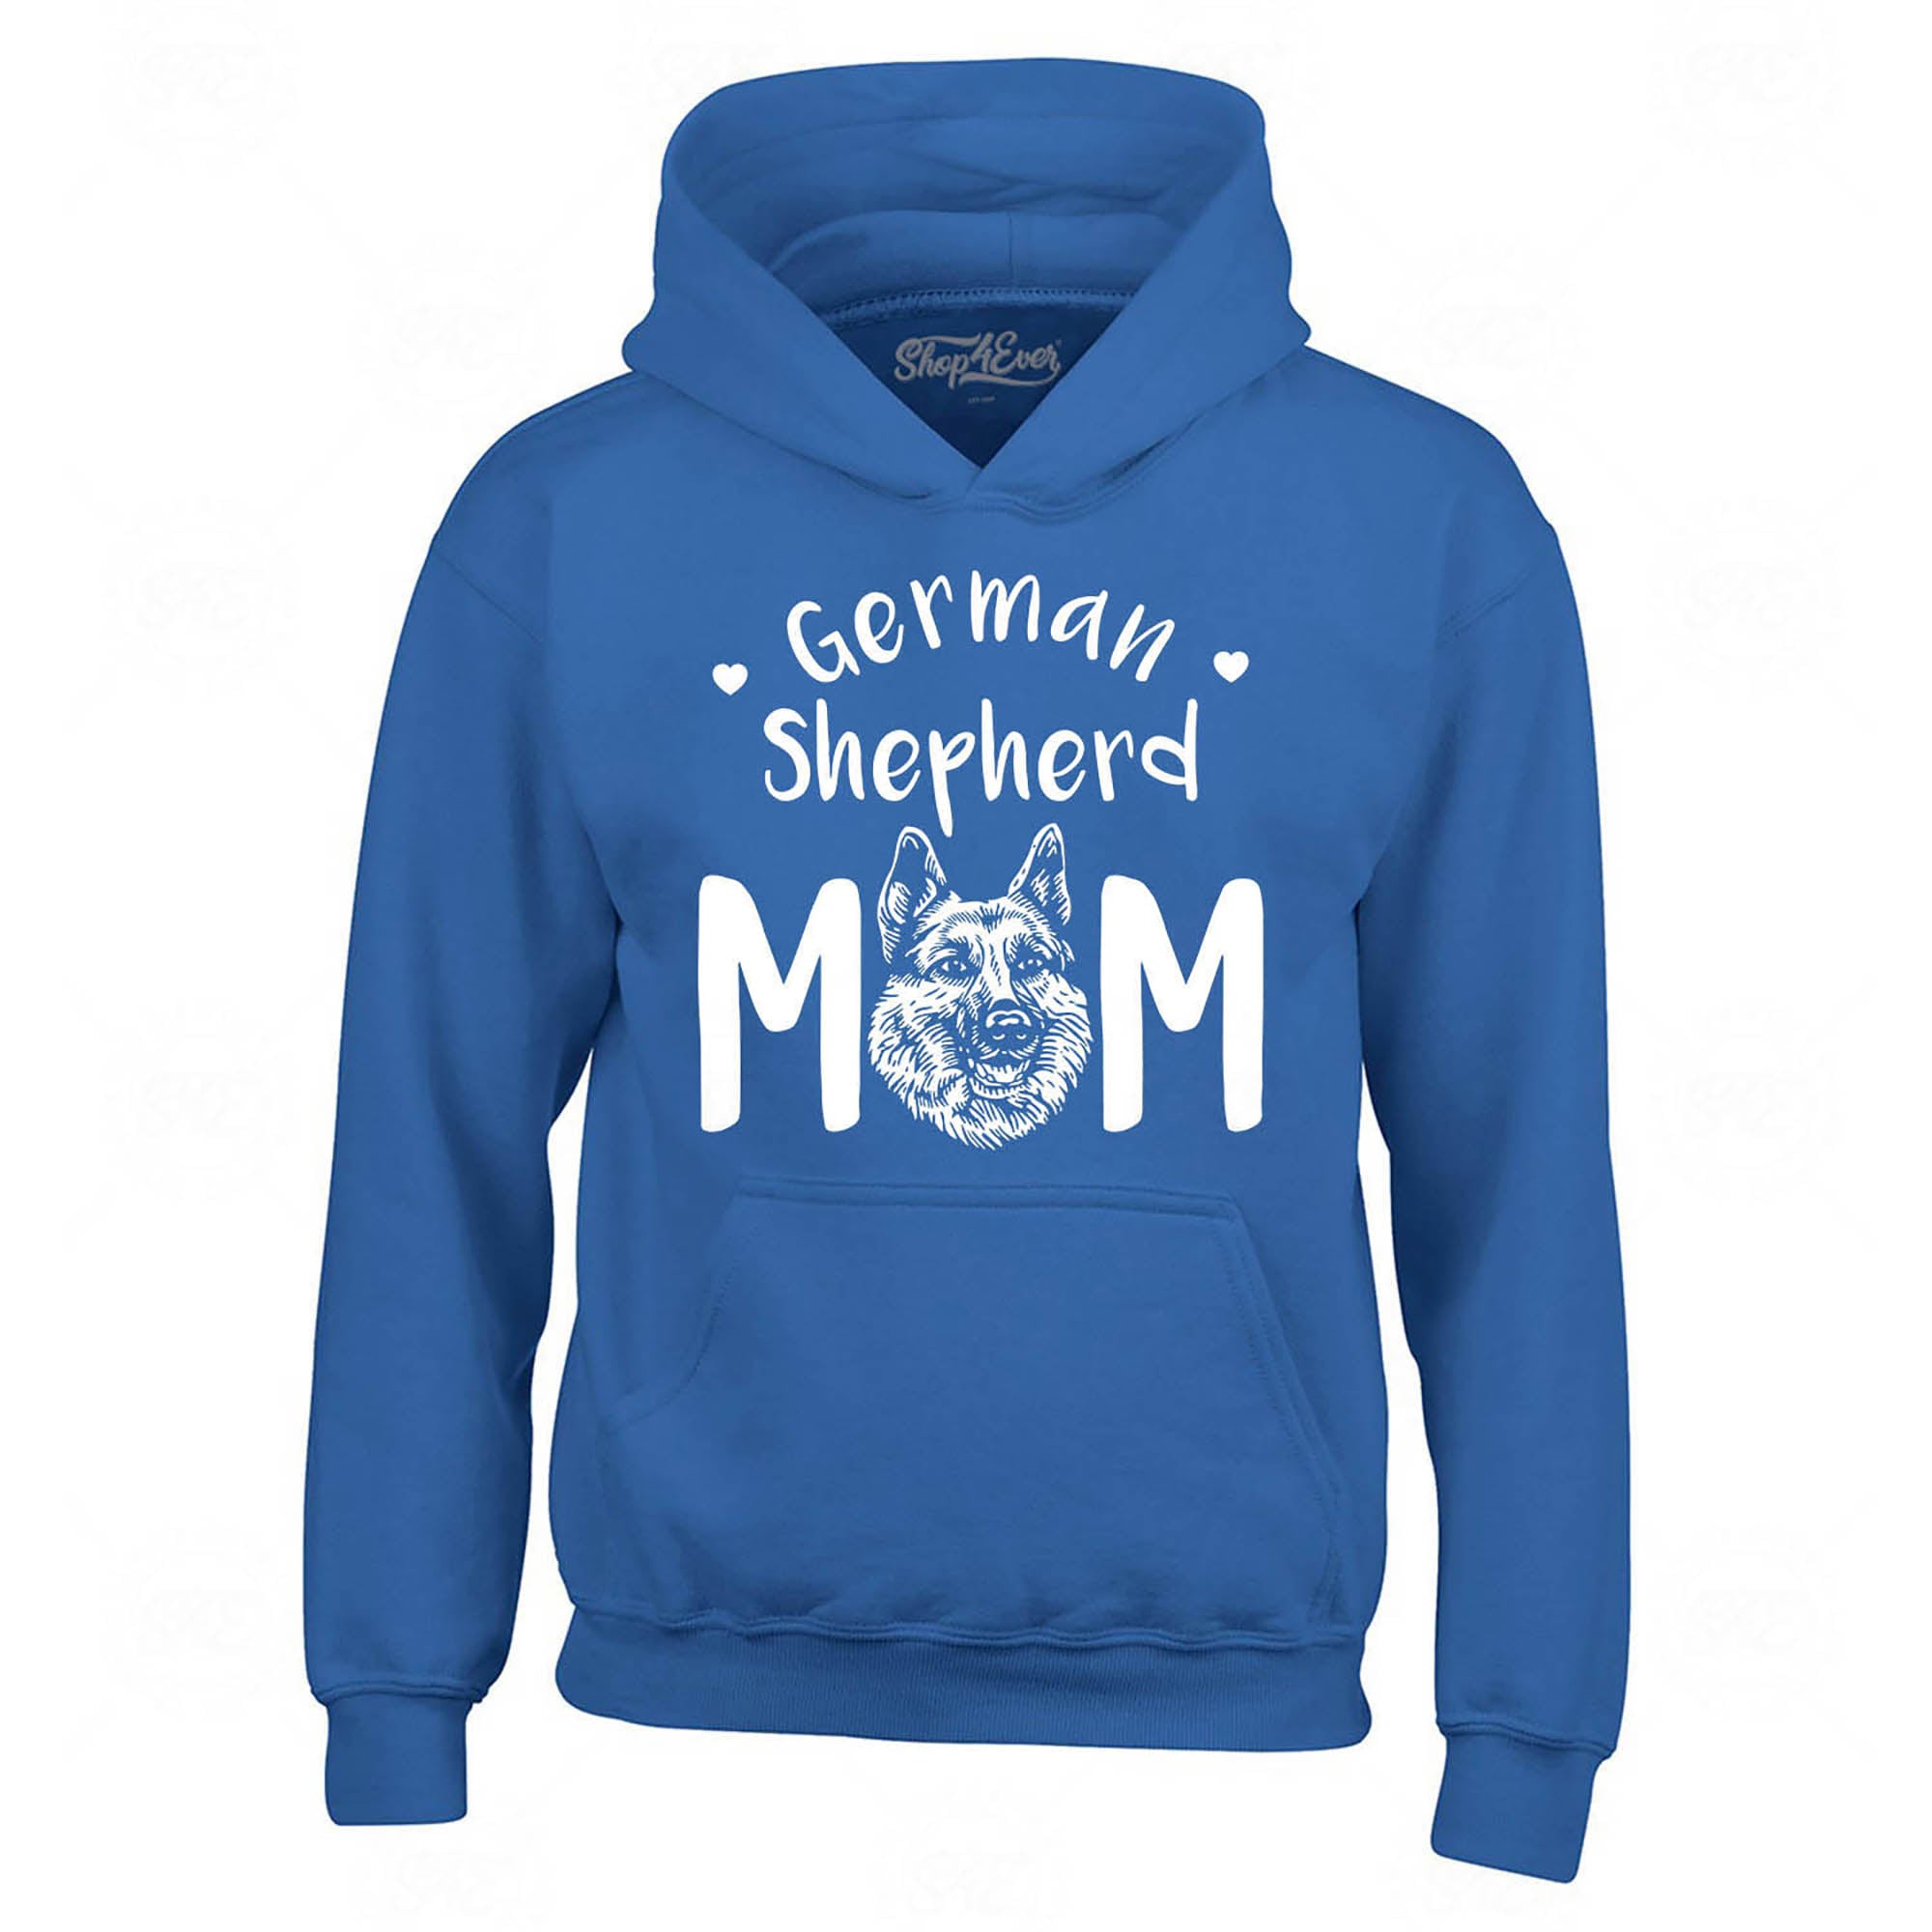 German Shepherd Mom Hoodie Sweatshirts